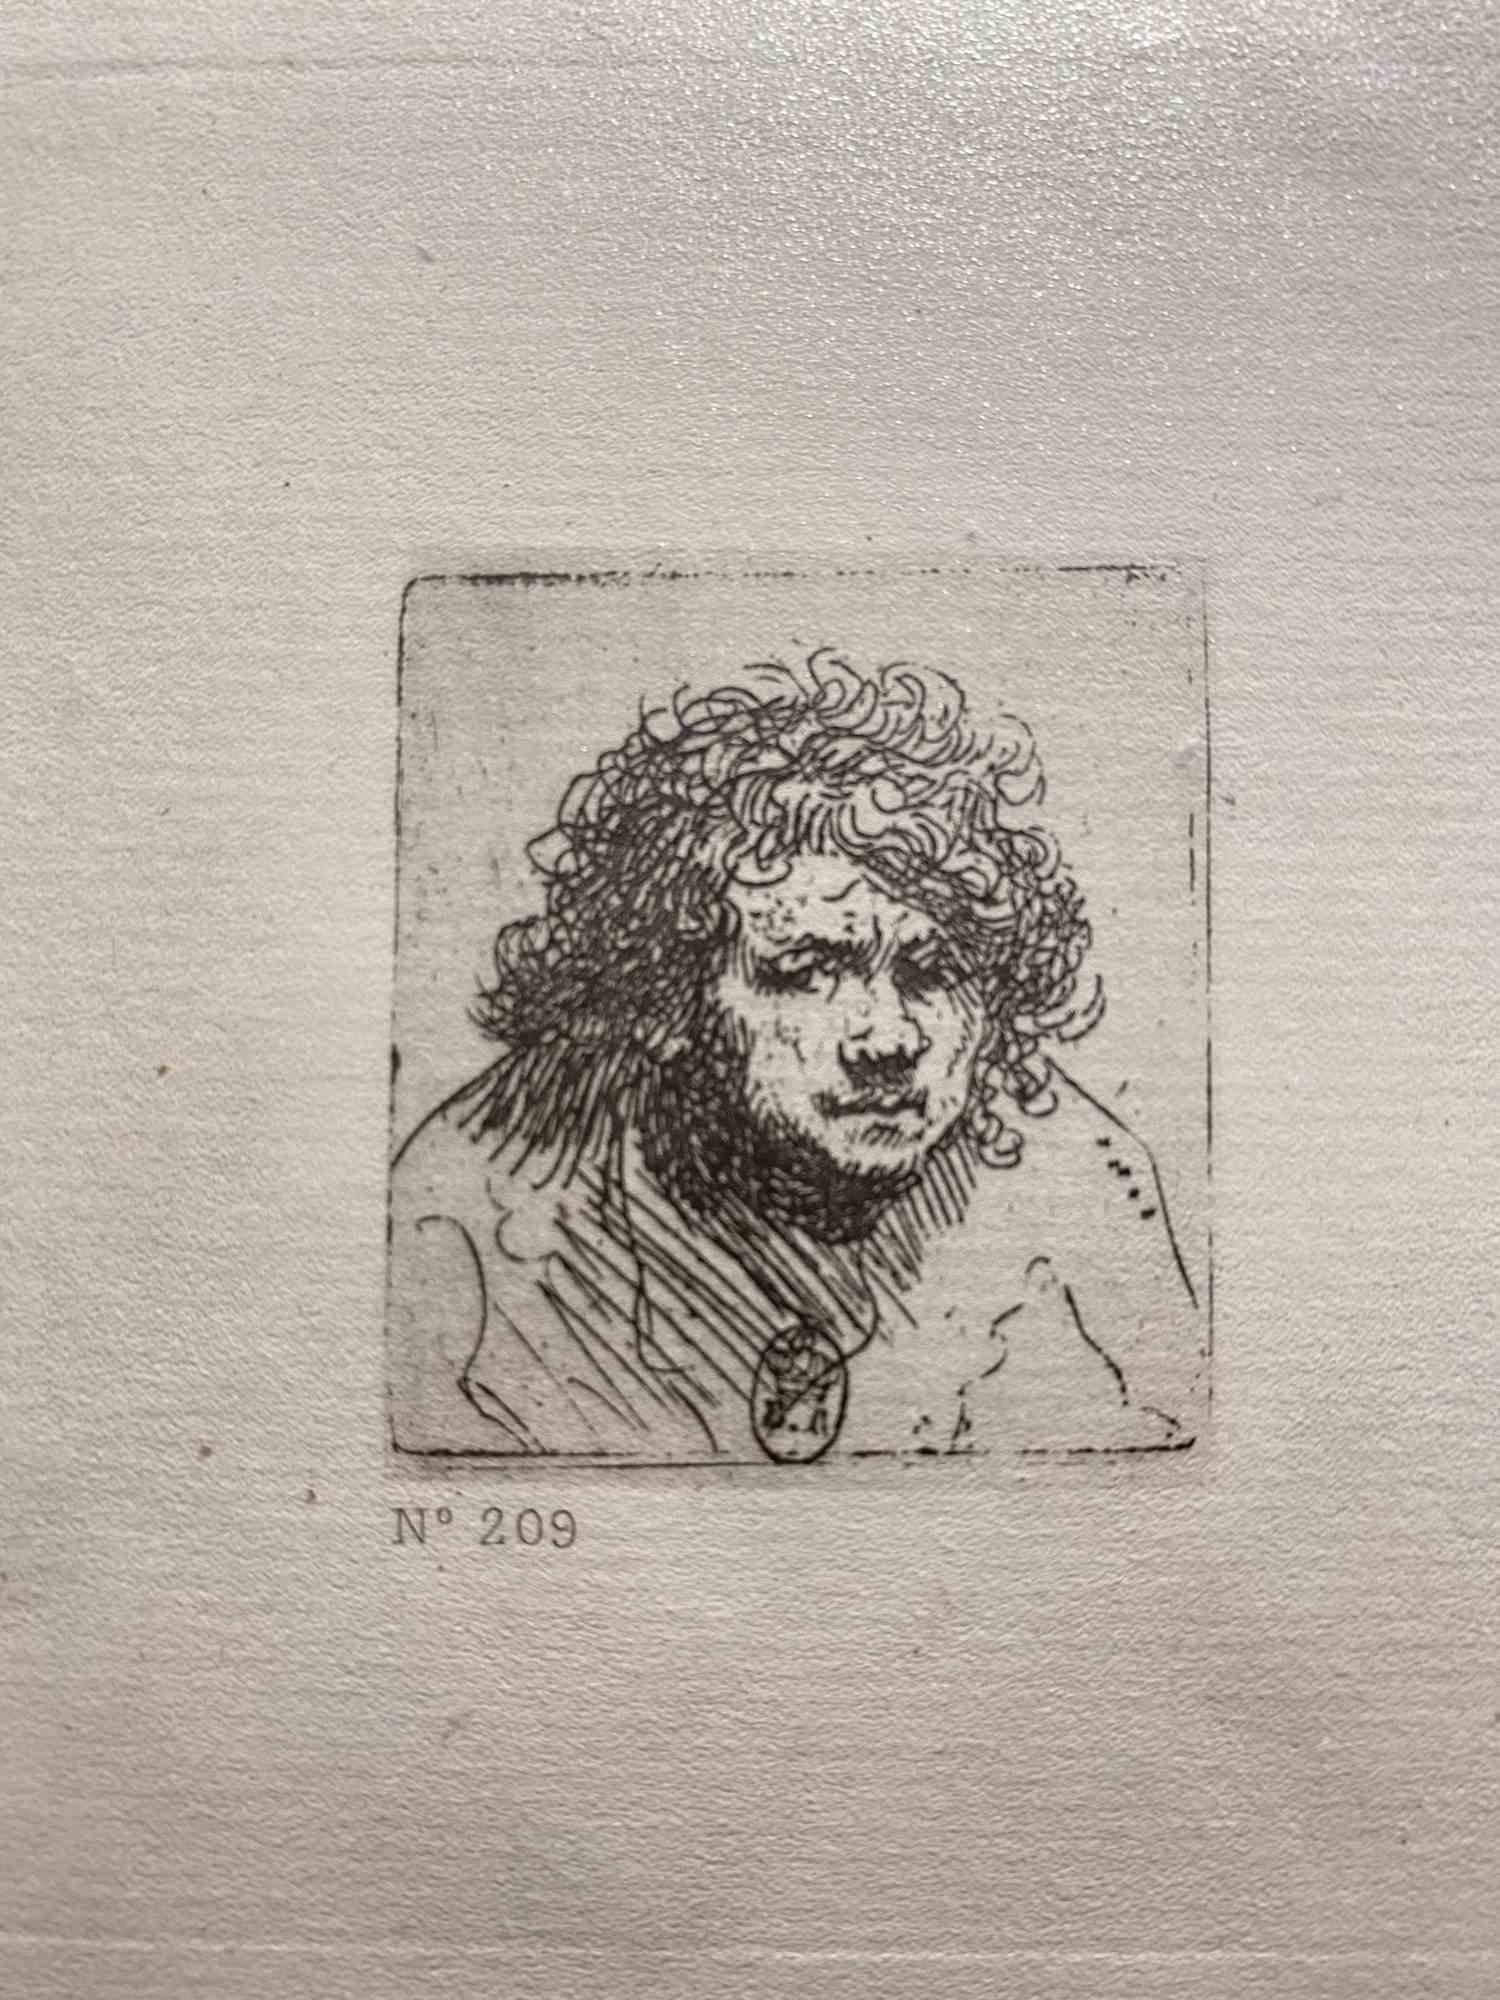 Portrait Print Charles Amand Durand - Self-Portrait - Buste penché vers l'avant - eau-forte d'après Rembrandt - 19ème siècle